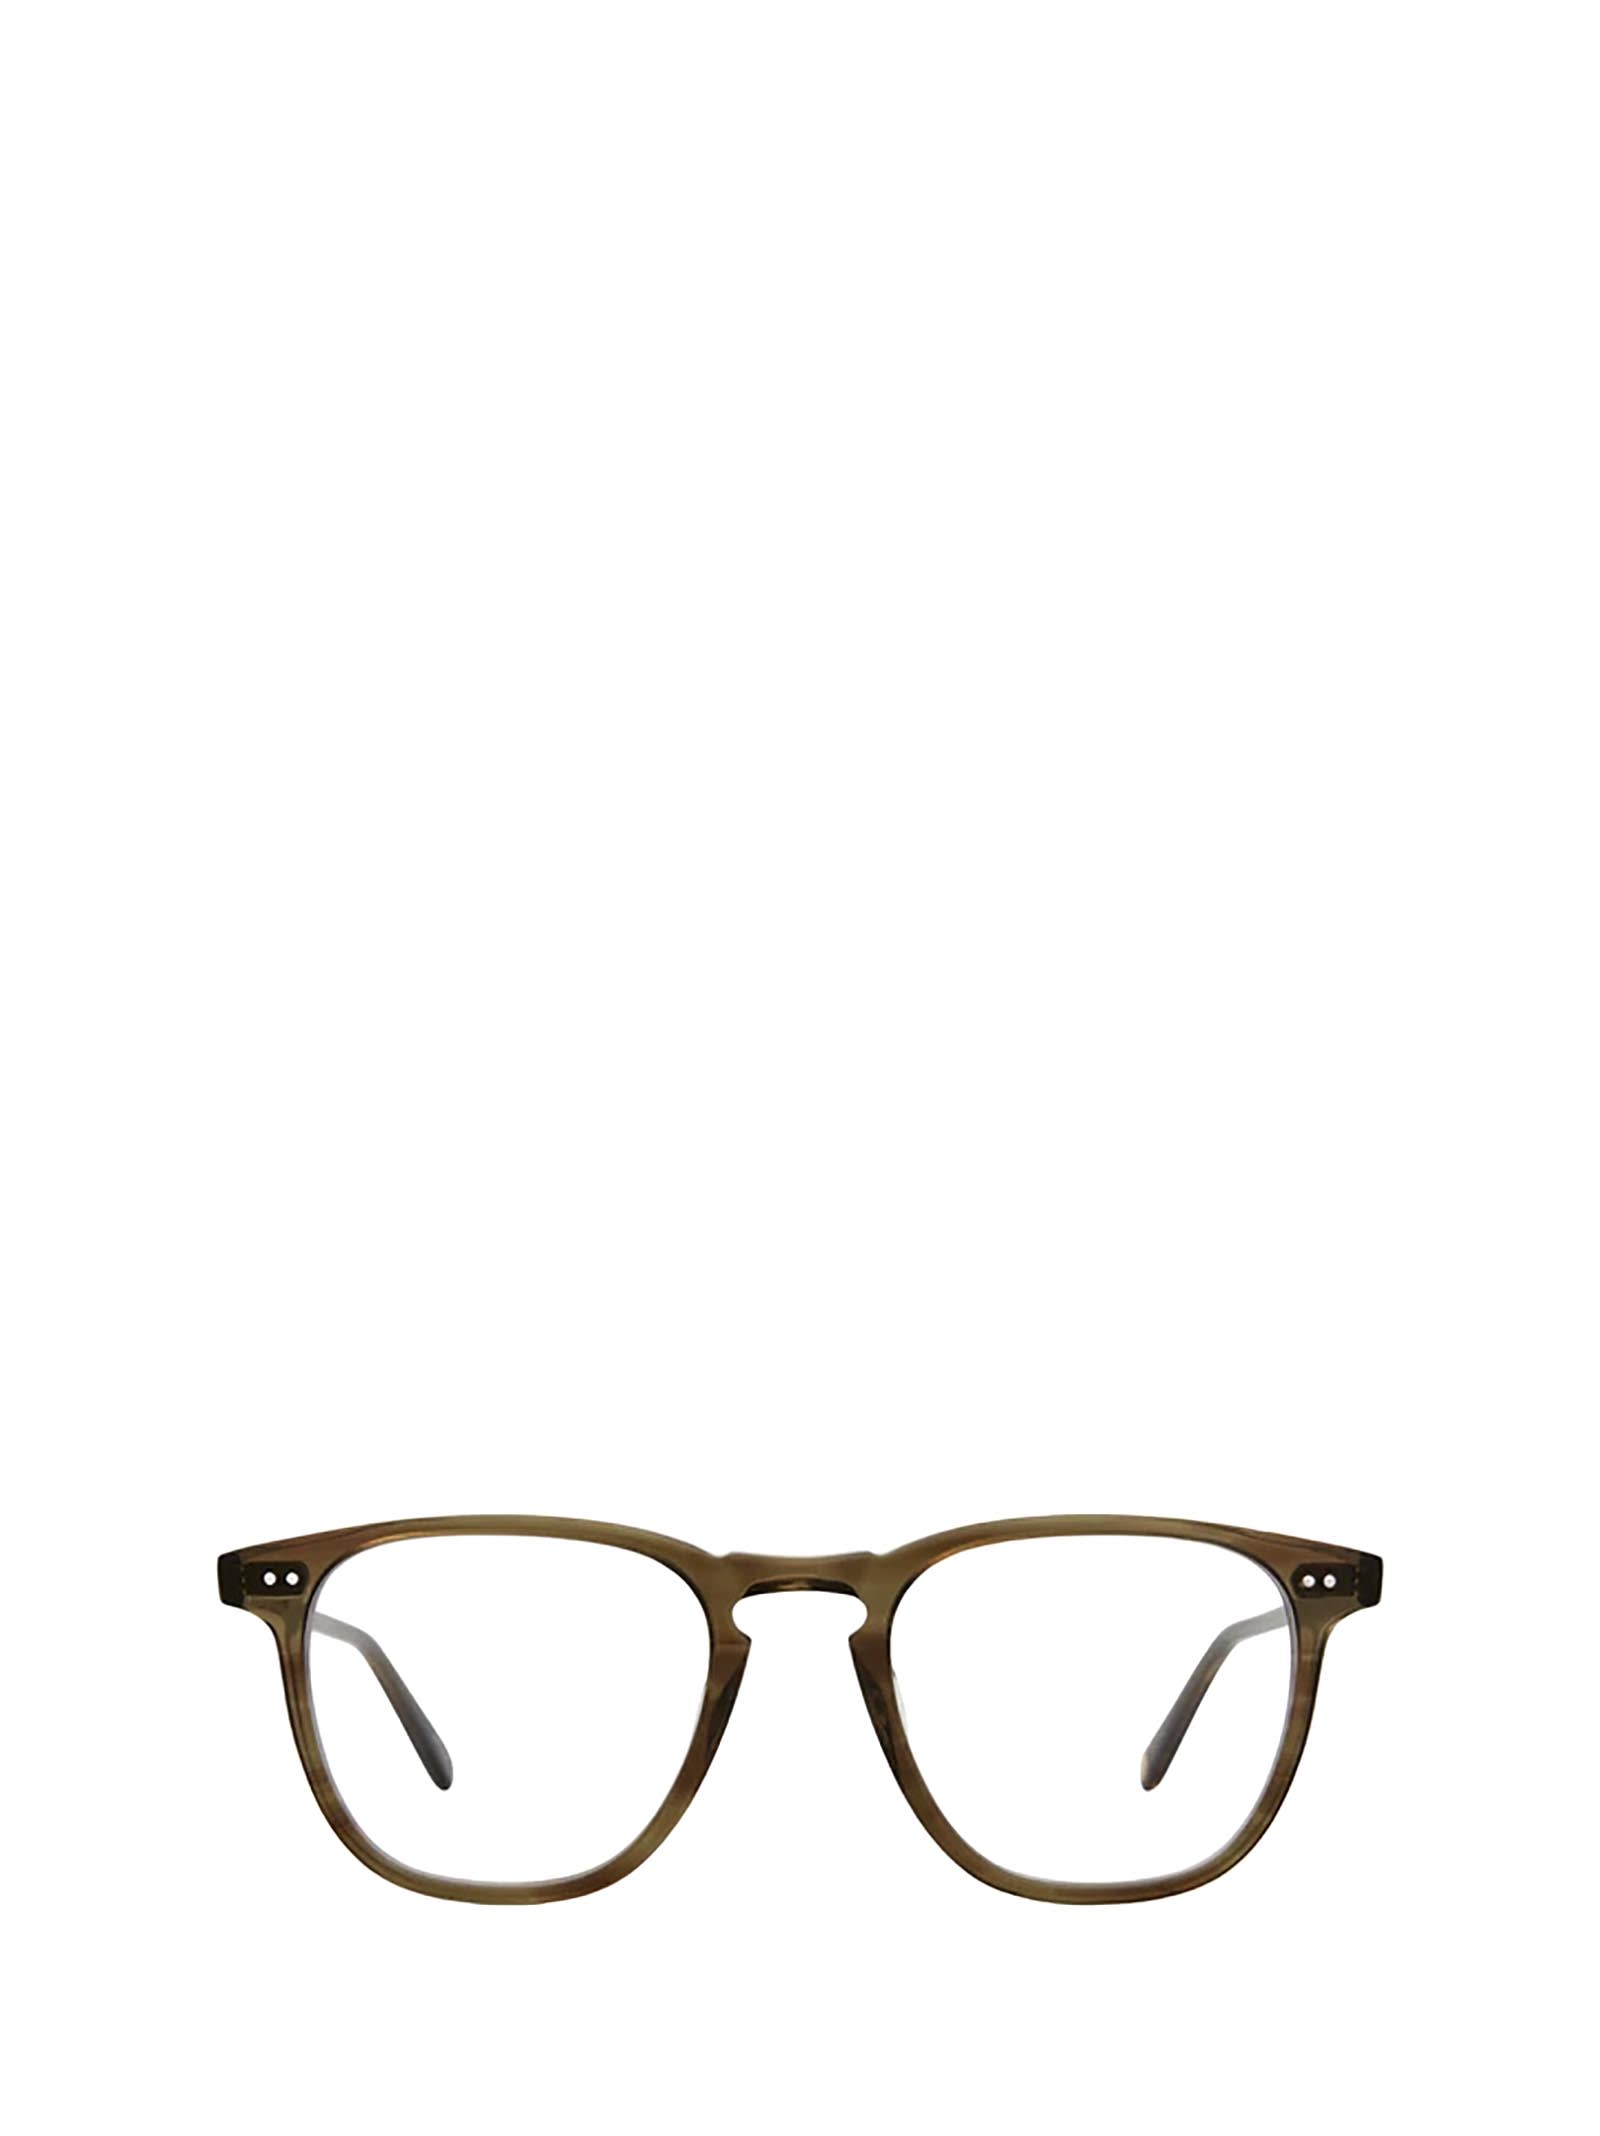 Brooks Olive Tortoise Glasses